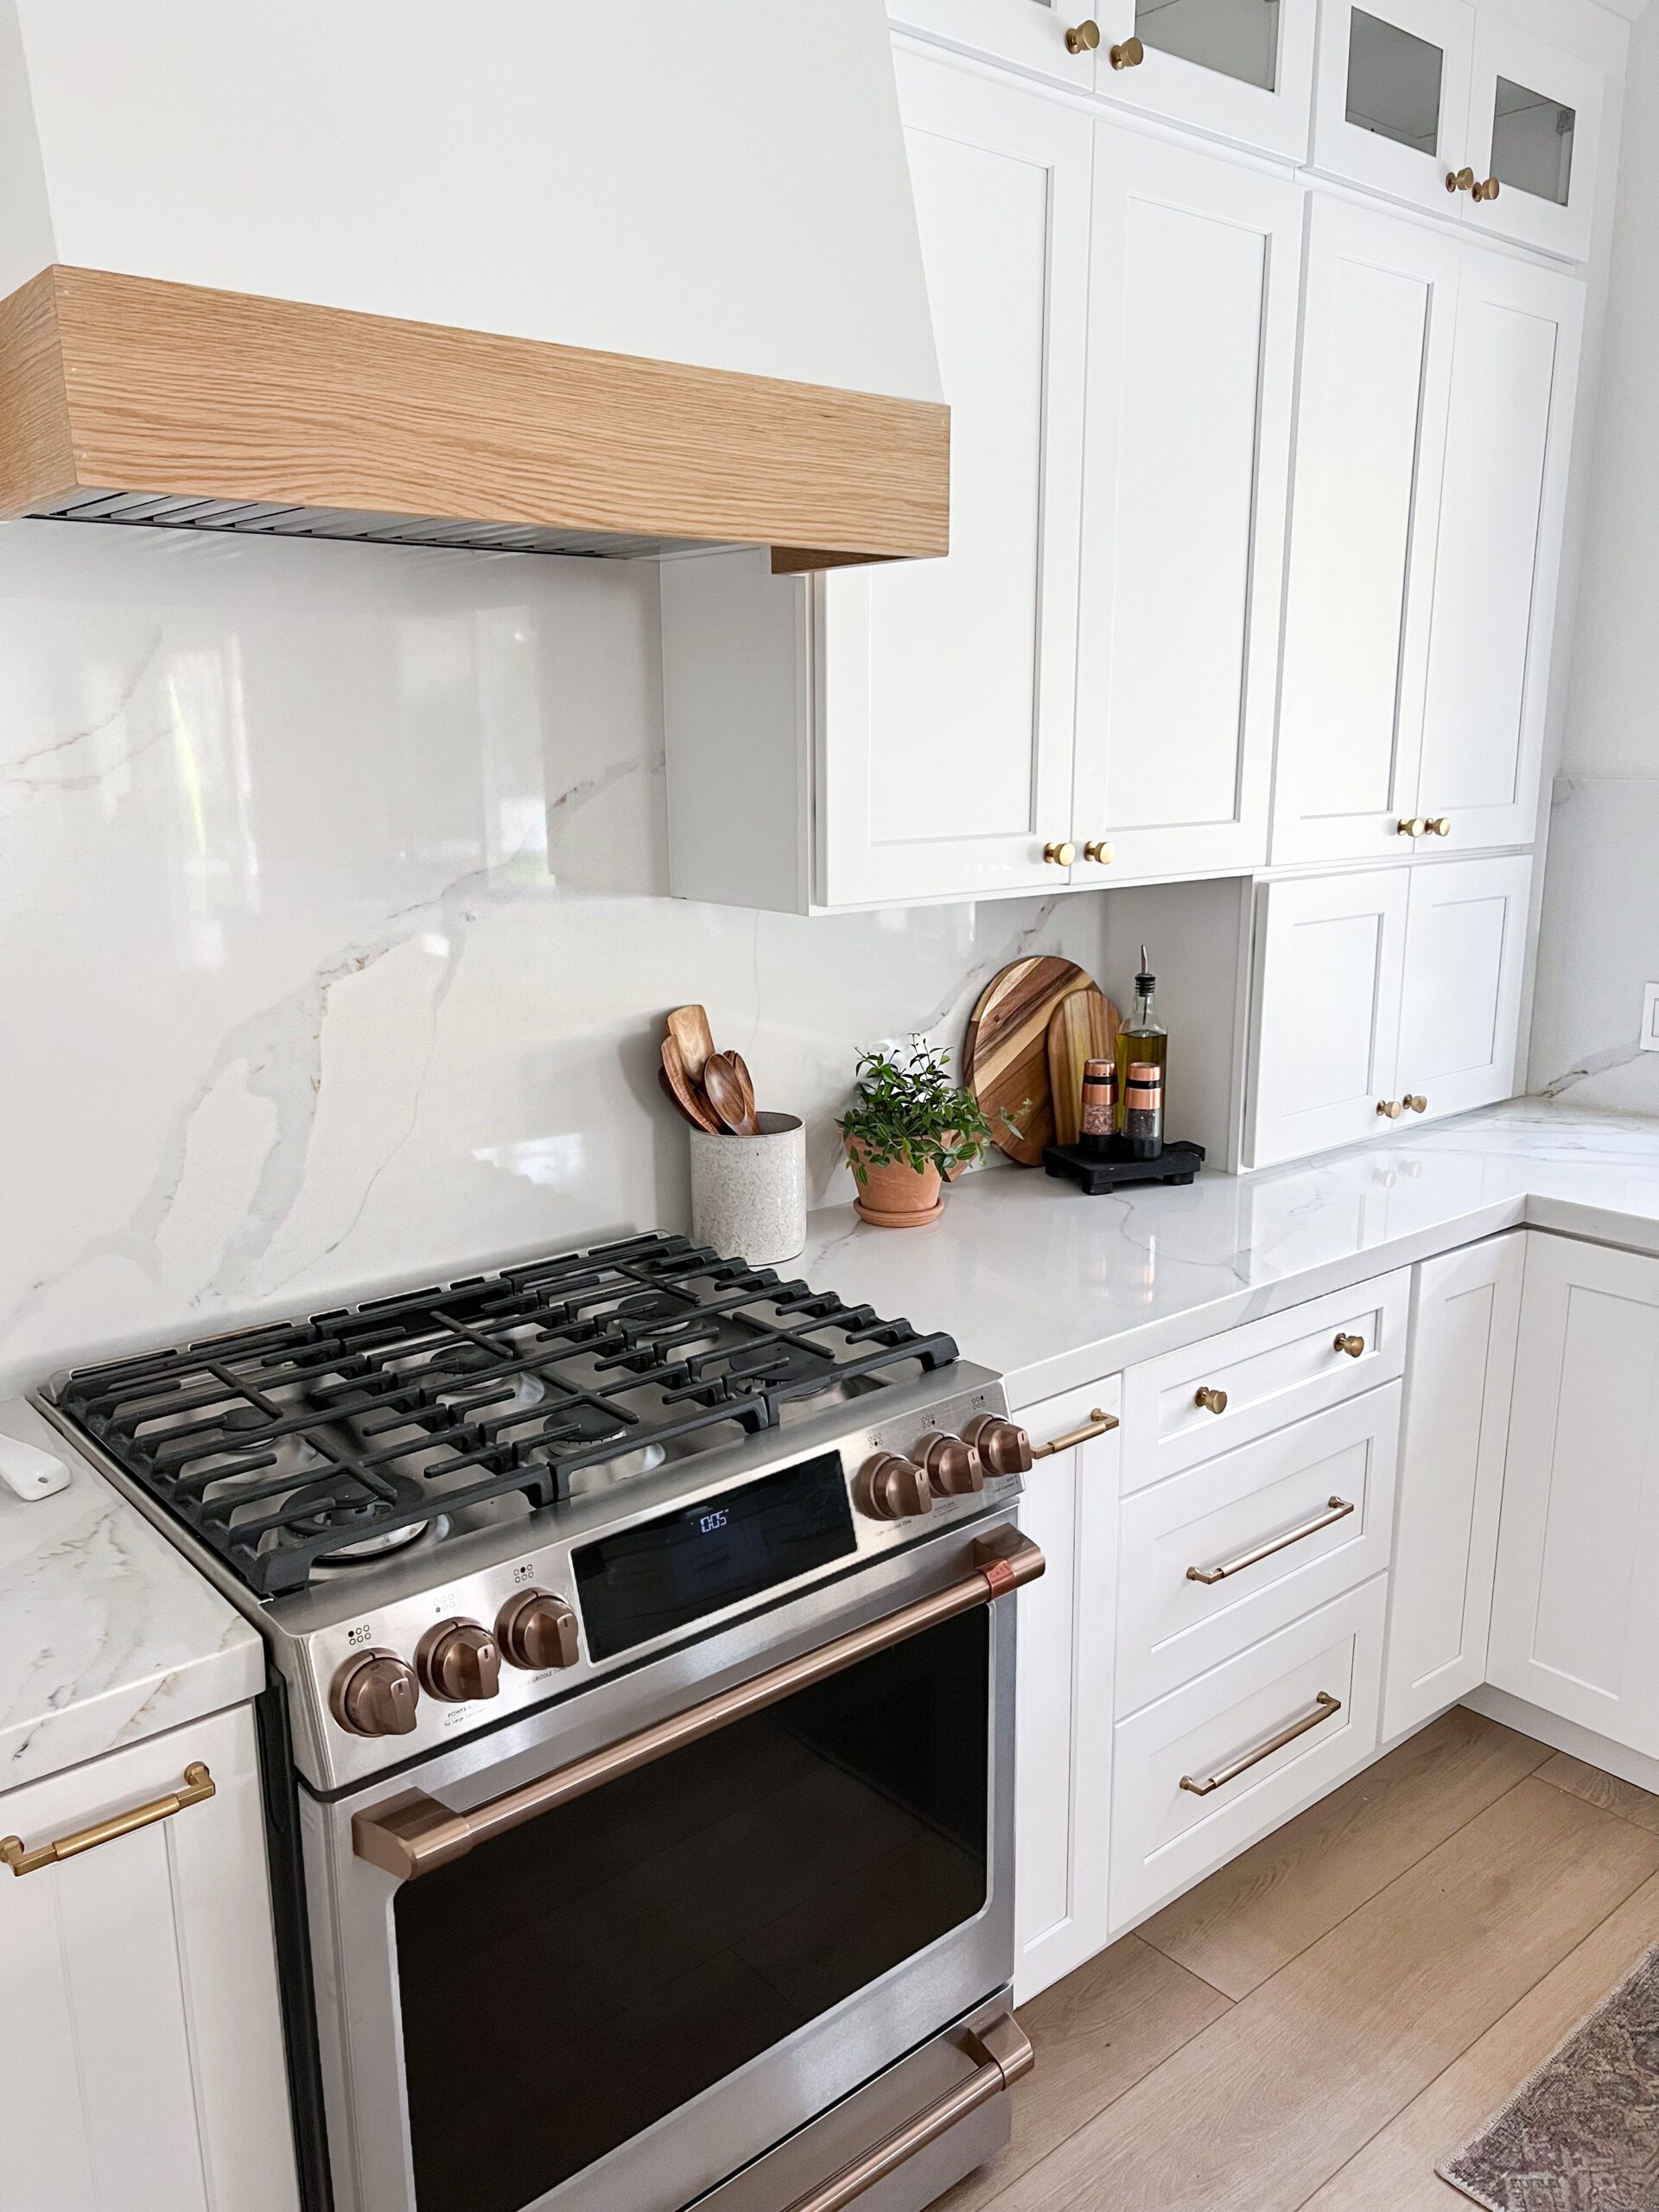 kitchen remodel
Brushed bronze cafe hardware appliance 
gold cabinet handles